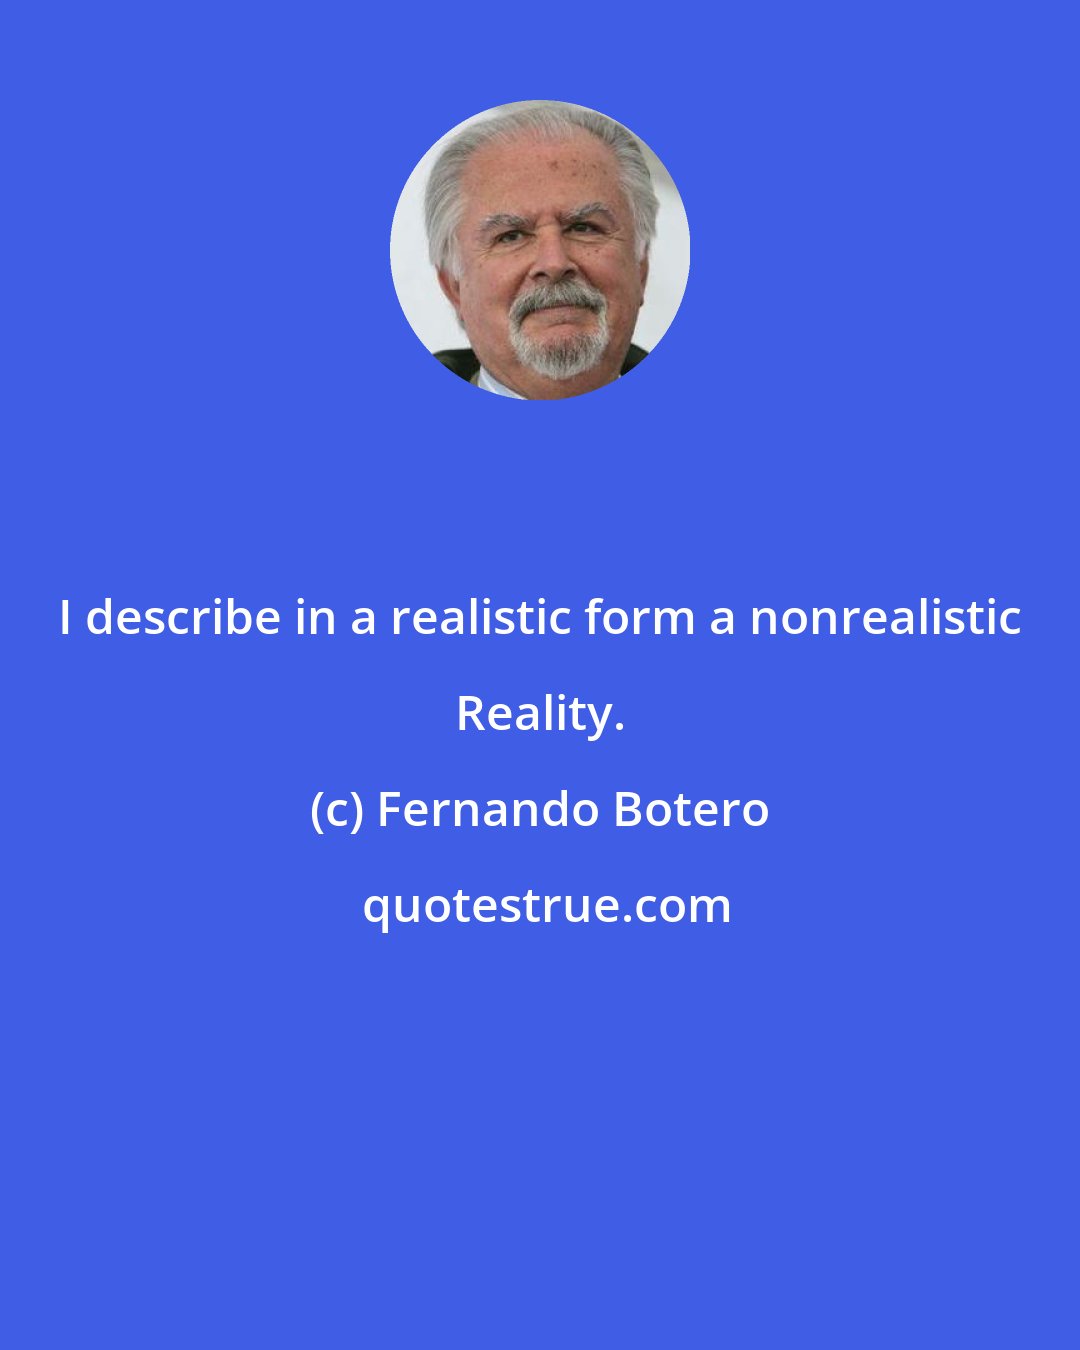 Fernando Botero: I describe in a realistic form a nonrealistic Reality.